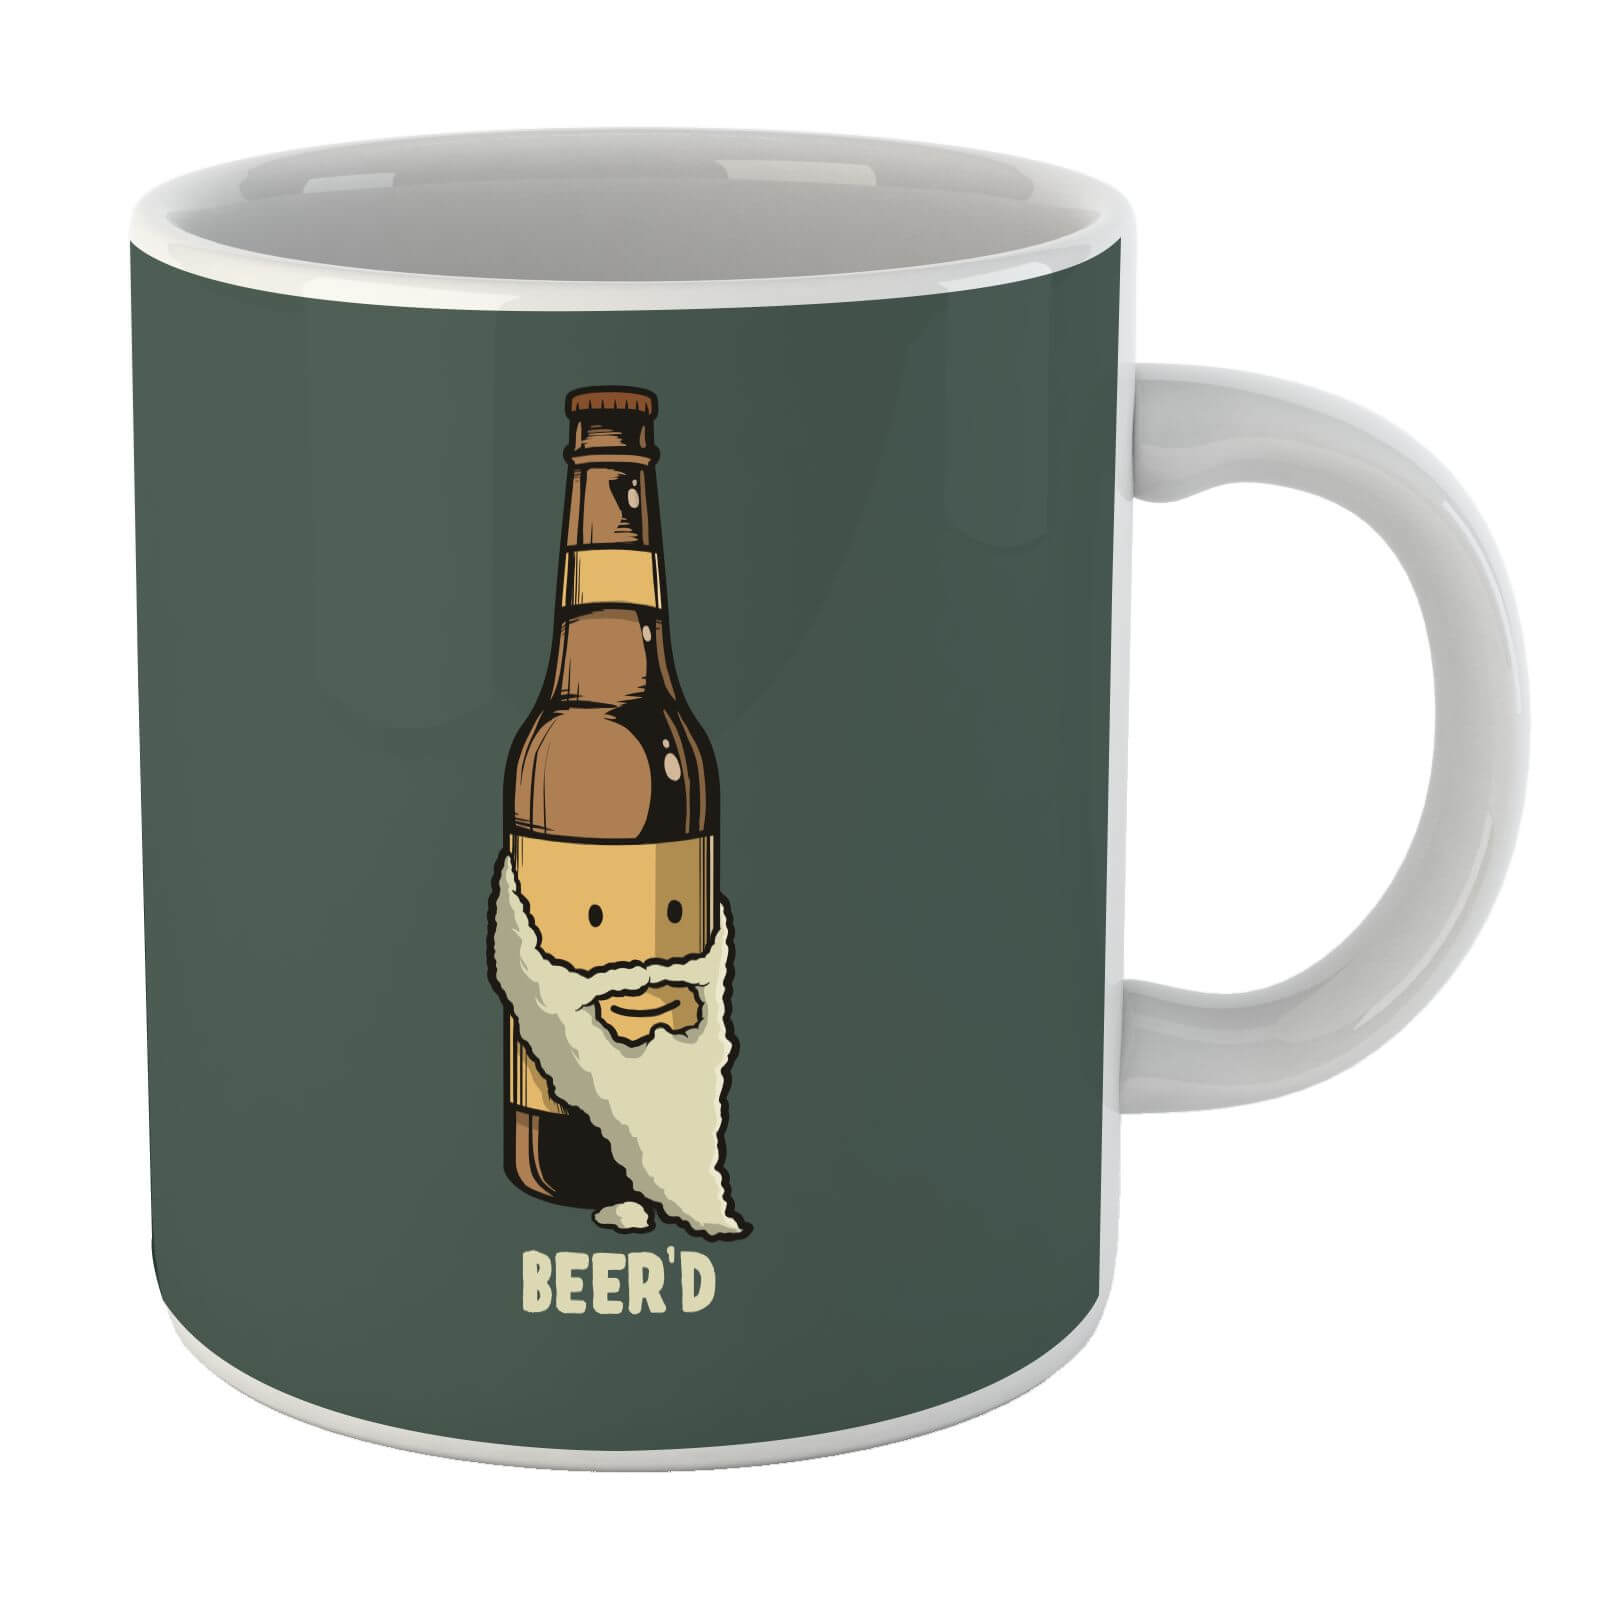 Beer'd Mug